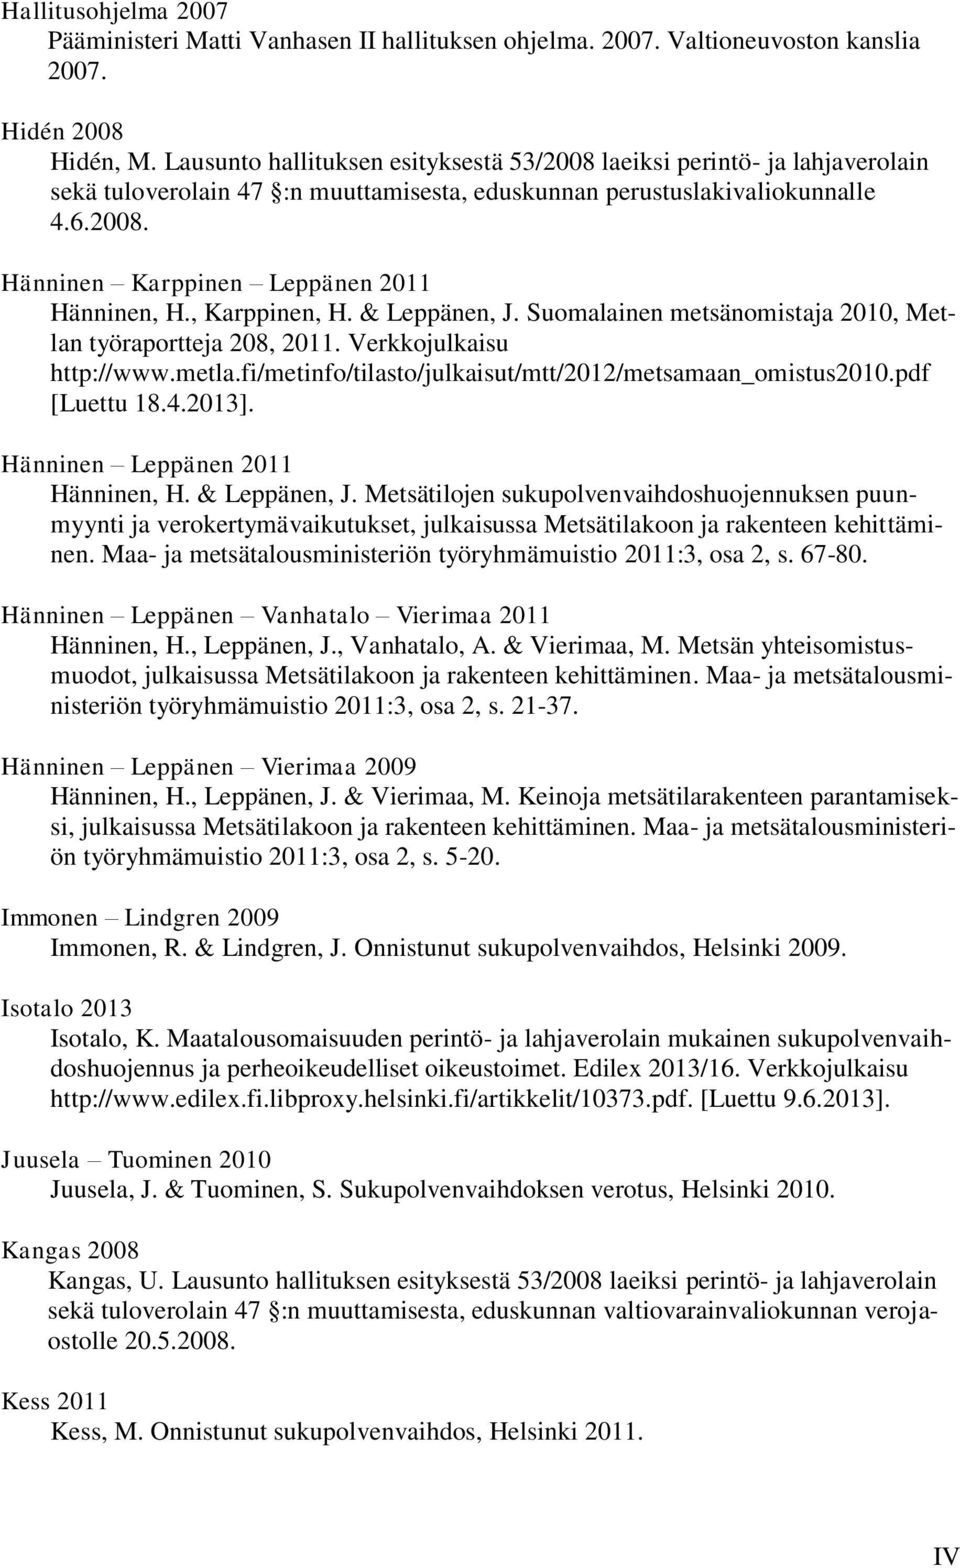 , Karppinen, H. & Leppänen, J. Suomalainen metsänomistaja 2010, Metlan työraportteja 208, 2011. Verkkojulkaisu http://www.metla.fi/metinfo/tilasto/julkaisut/mtt/2012/metsamaan_omistus2010.